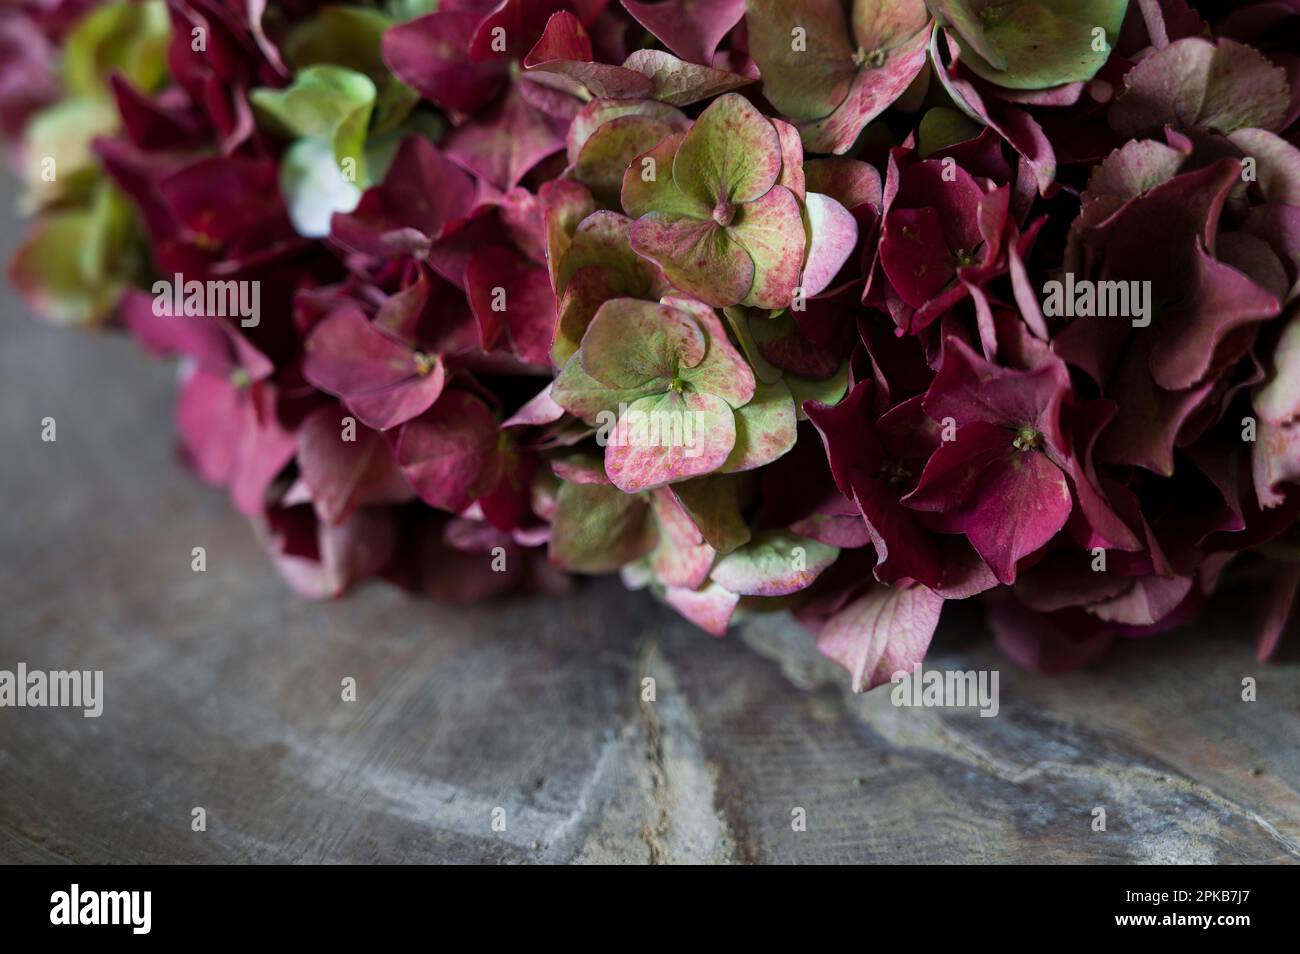 Corona floreale legata da fiori di ortensia rosso scuro e verde, primo piano, dettaglio, decorazione con materiali naturali Foto Stock